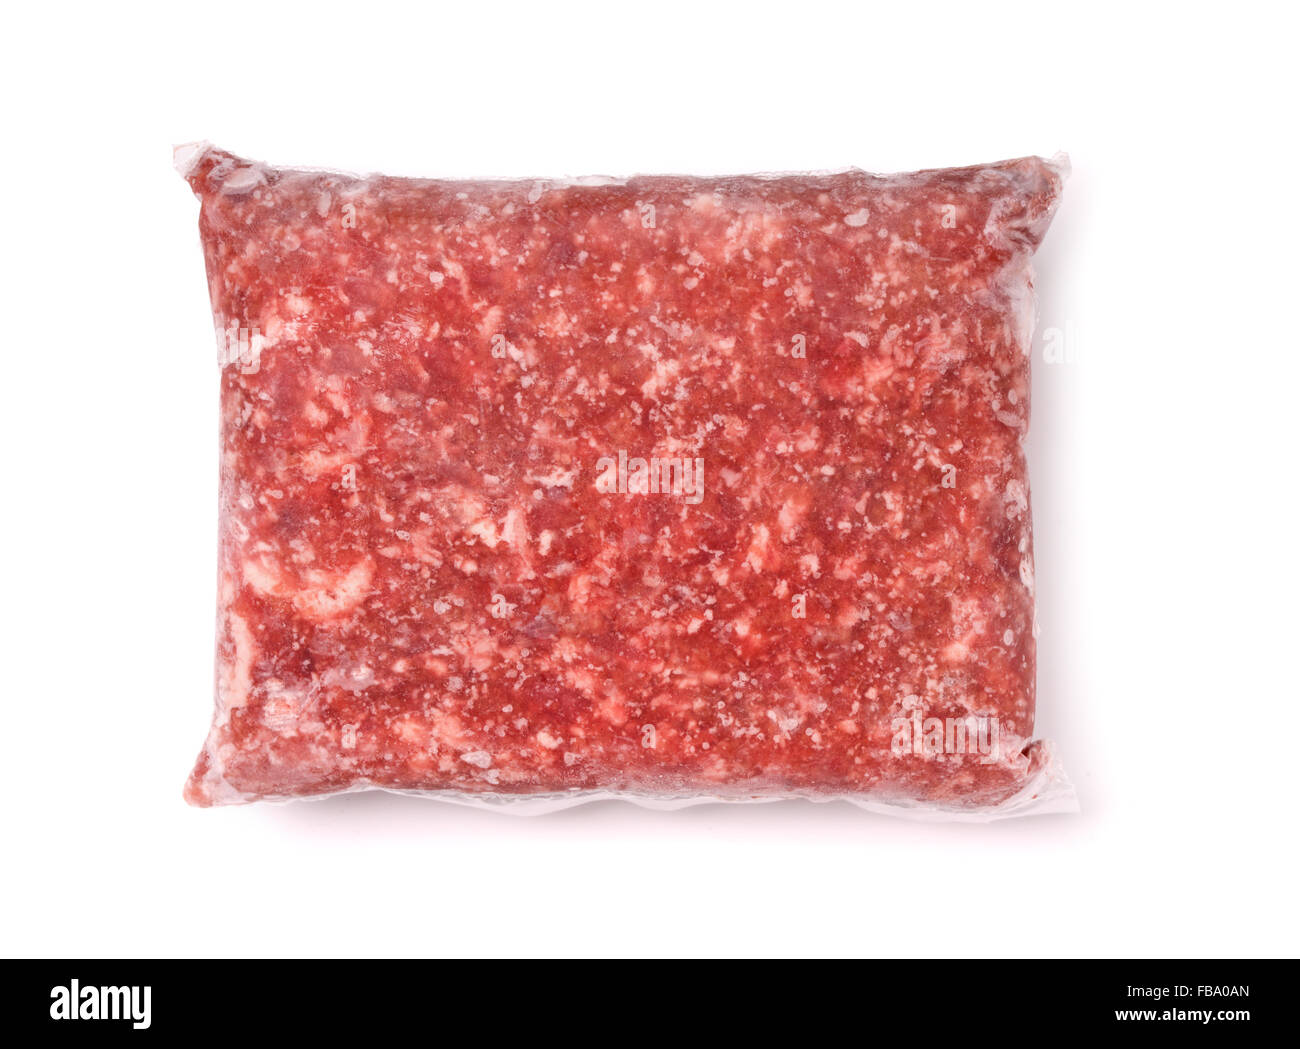 Paquet de viande congelée isolated on white Banque D'Images